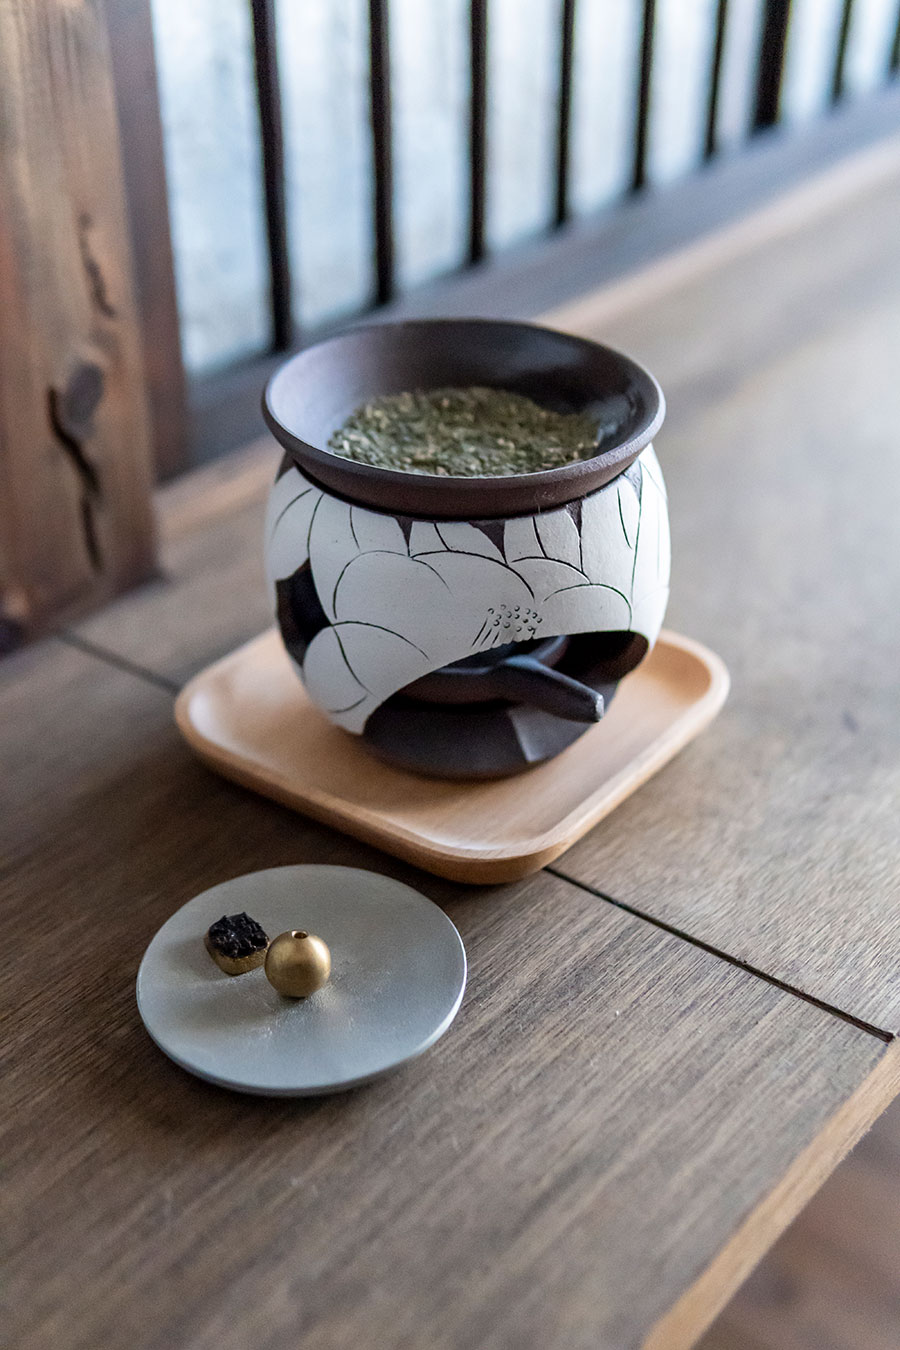 益子焼の茶香炉。お茶の葉に熱を加えて、香りを愉しむ。